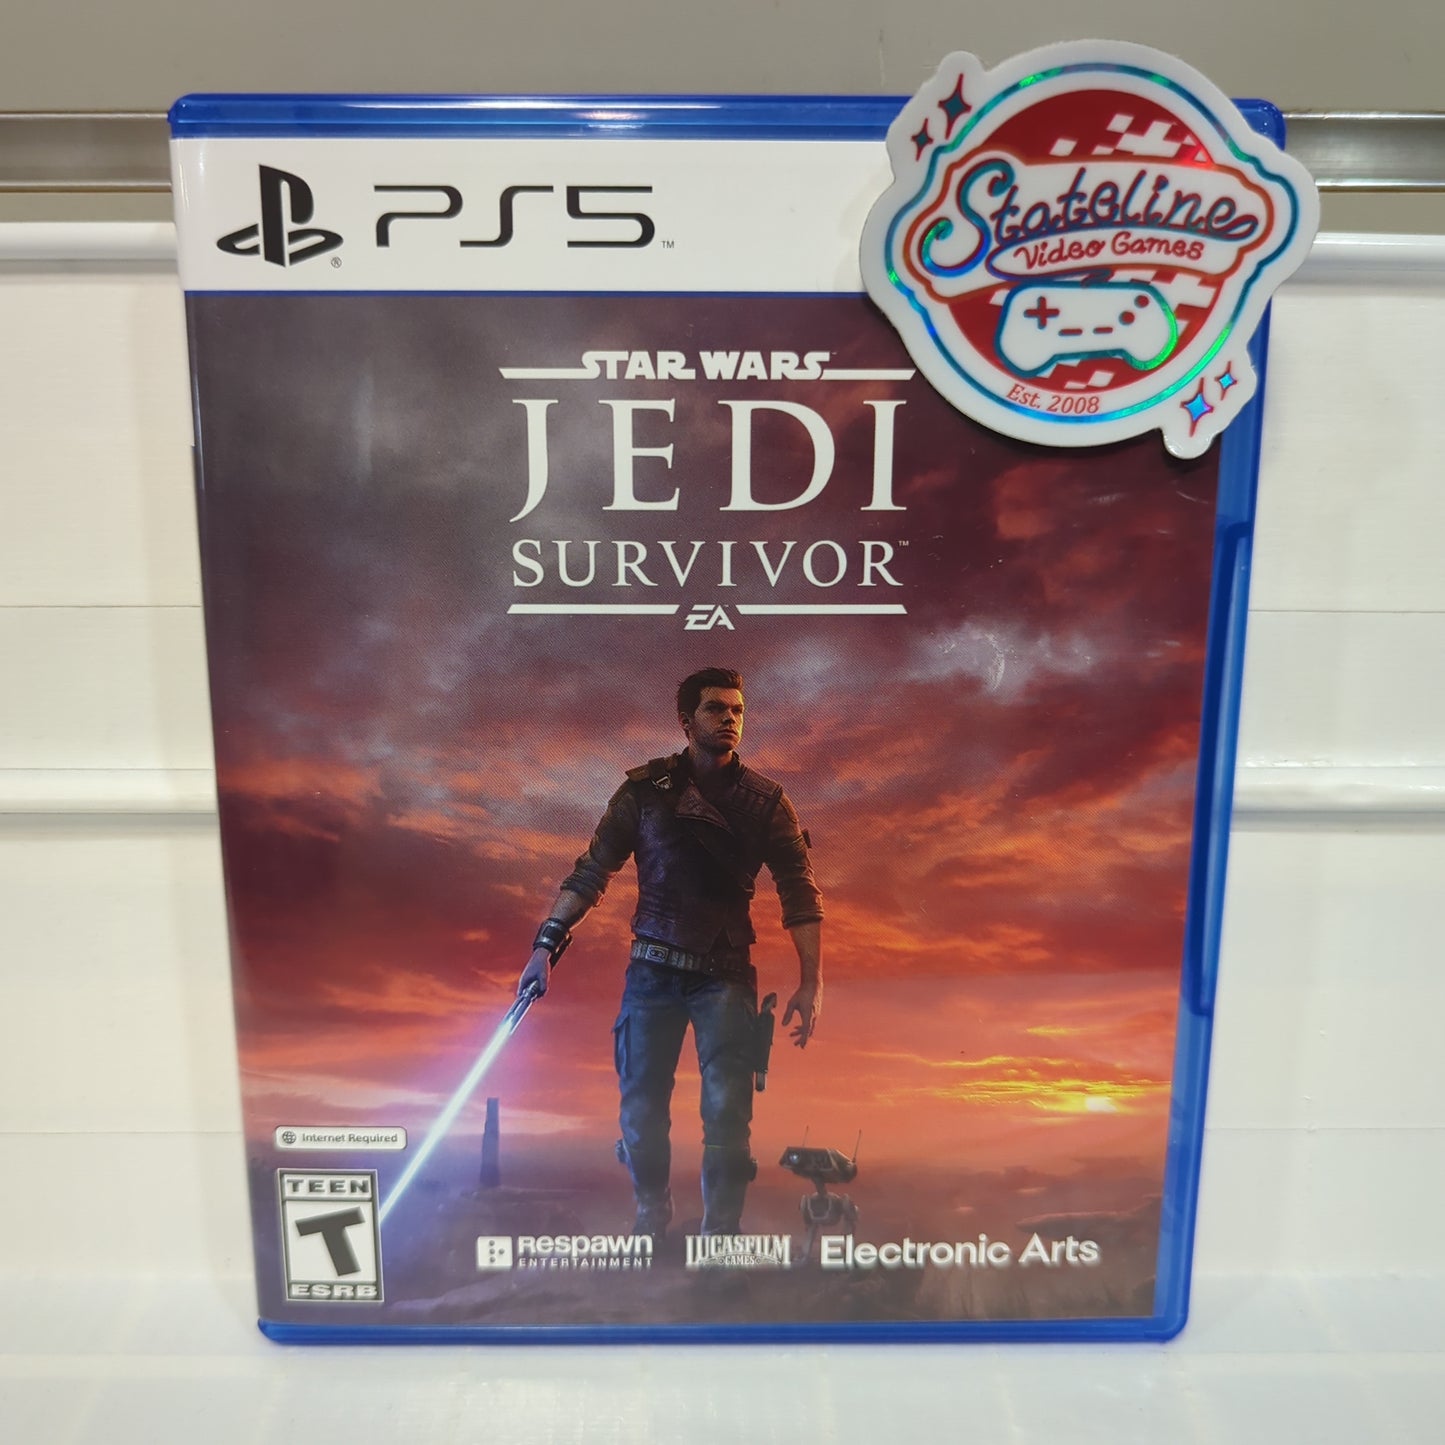 Star Wars Jedi: Survivor - Playstation 5